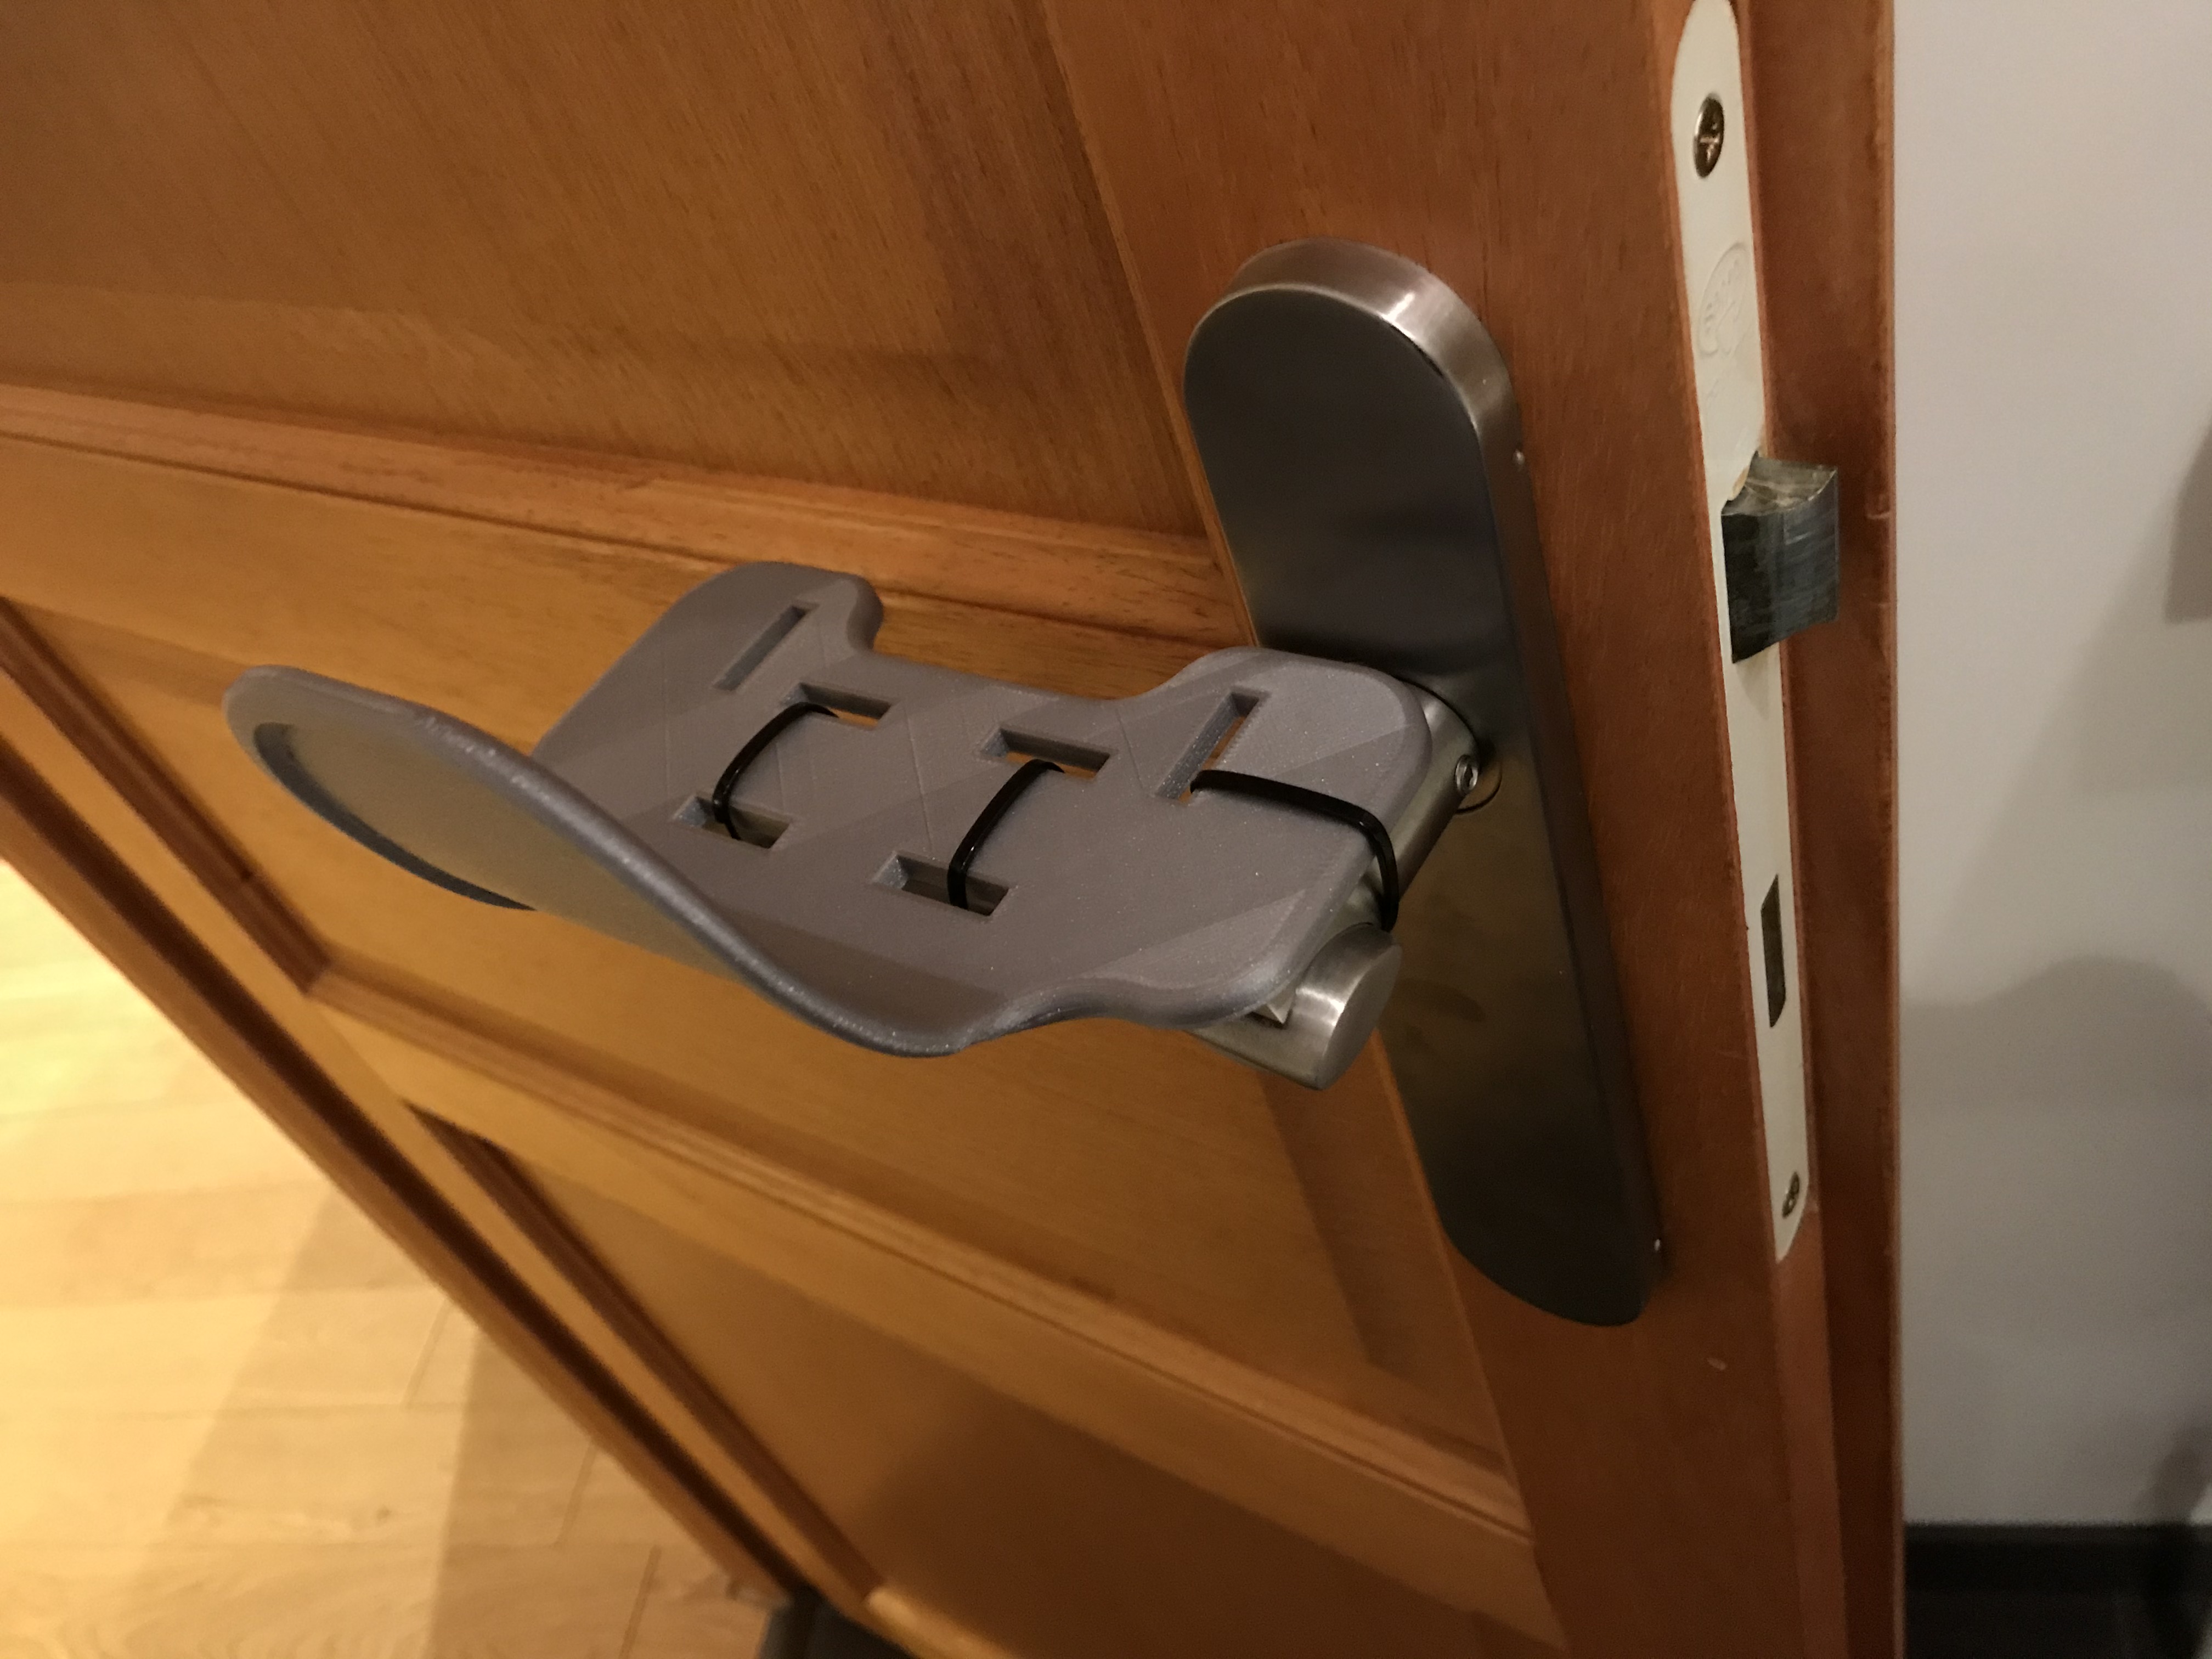 Door opener hands free with universal design